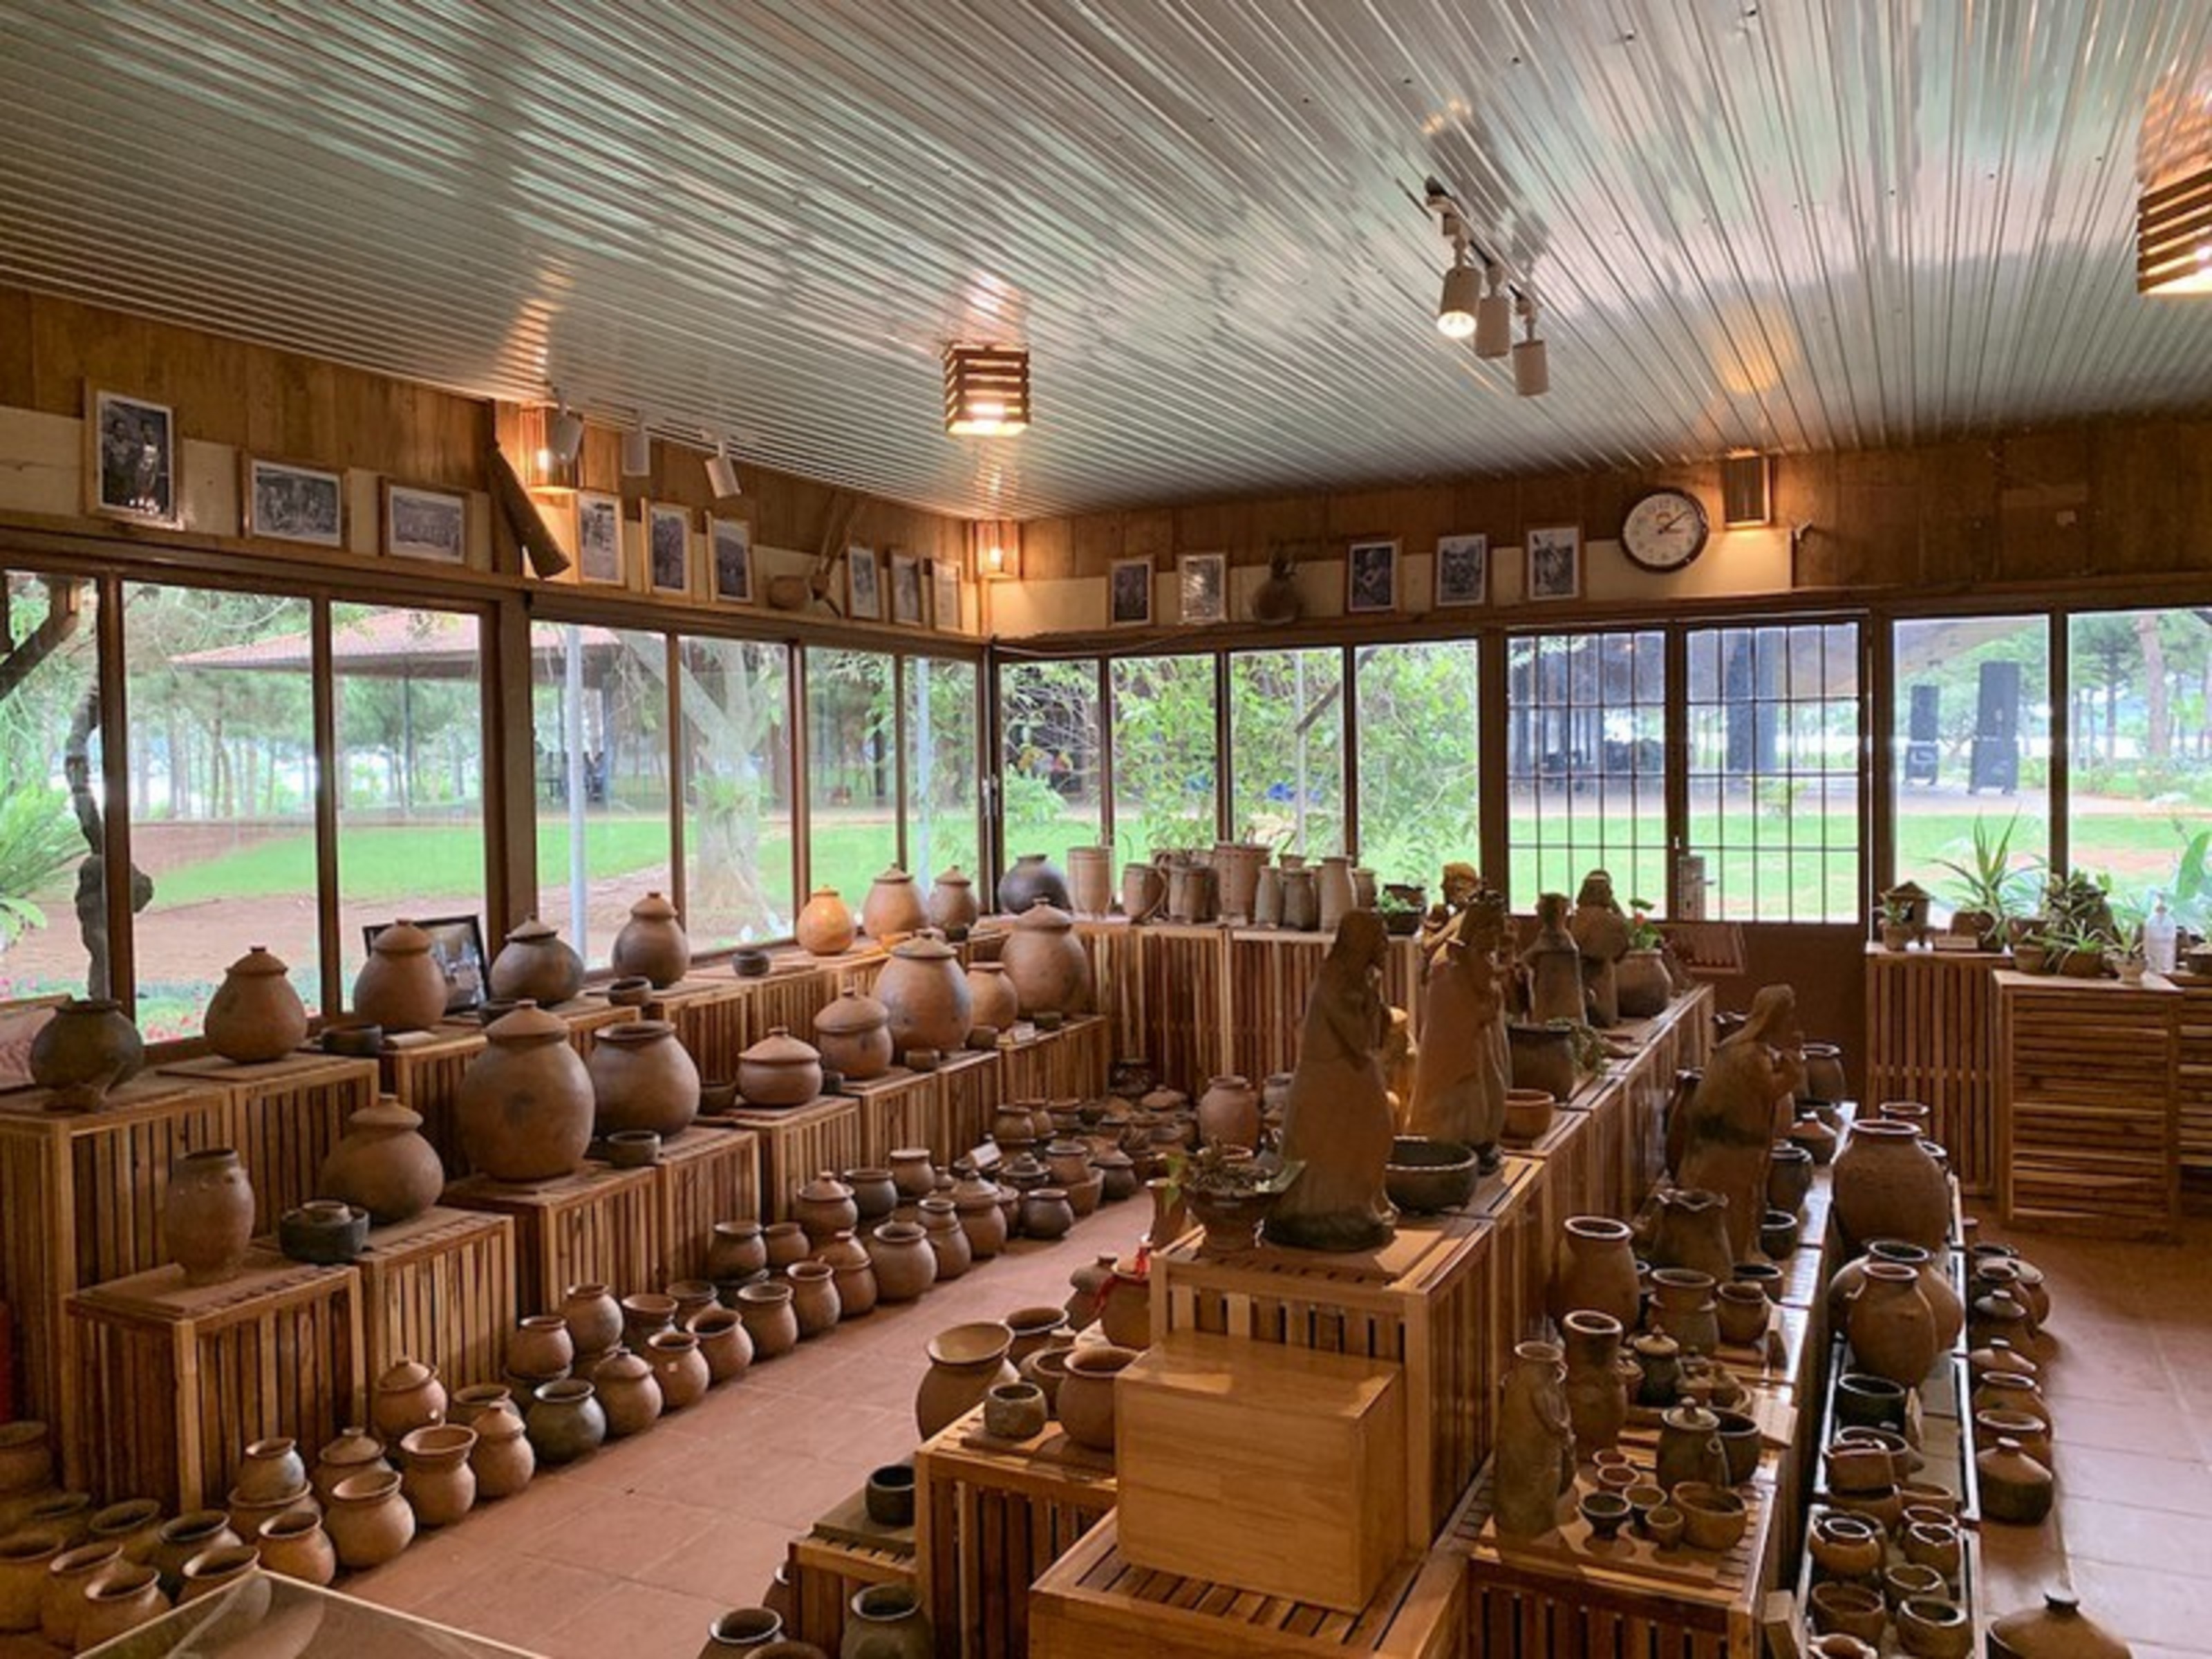 Các sản phẩm gốm mộc truyền thống của đồng bào Chu Ru được trưng bày ở nhà thờ Ka Đơn.